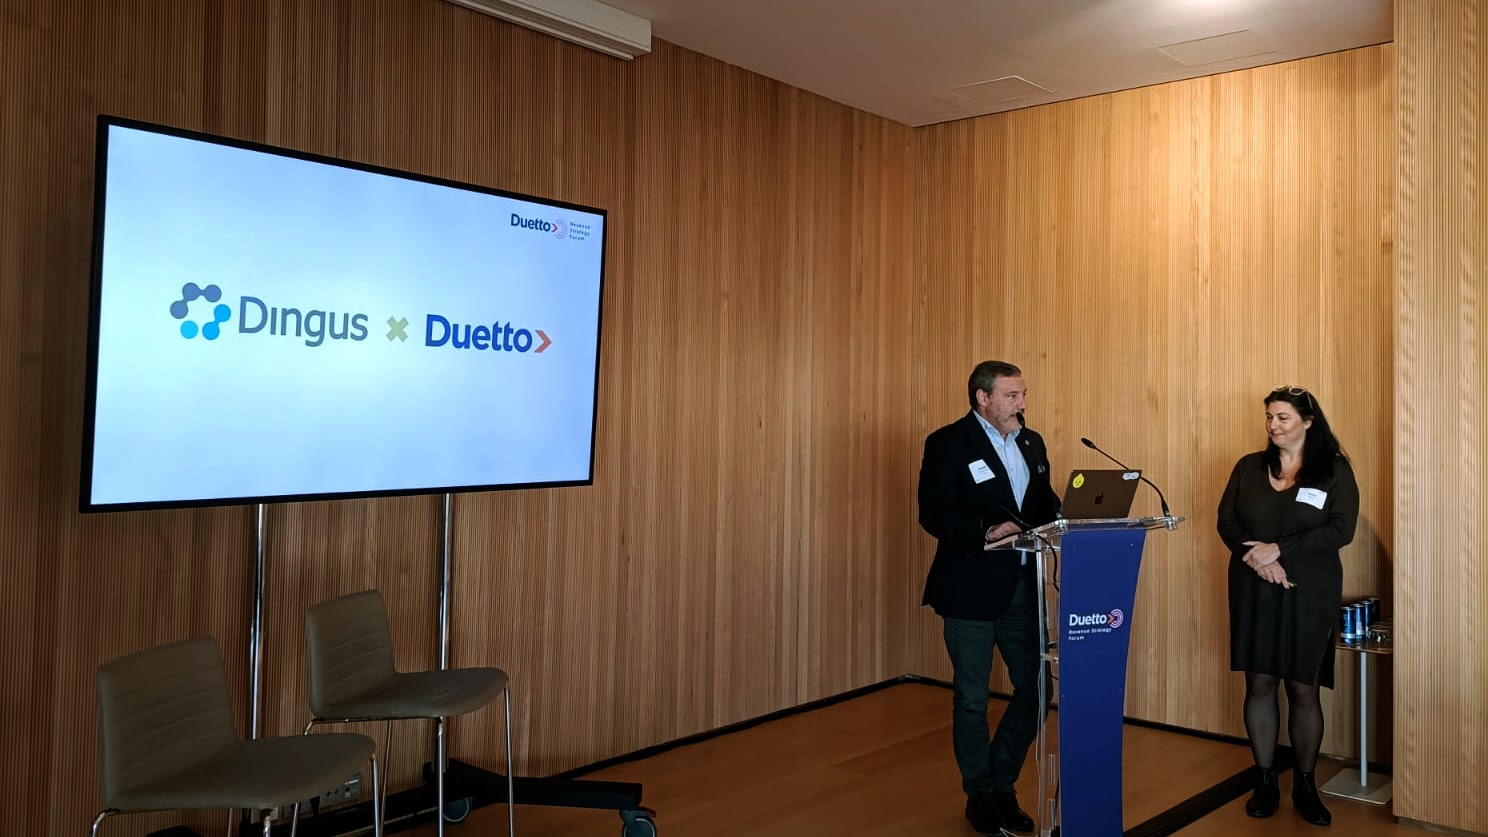 Duetto y Dingus anuncian una alianza tecnológica estratégica durante el Duetto Revenue Strategy Forum en Palma